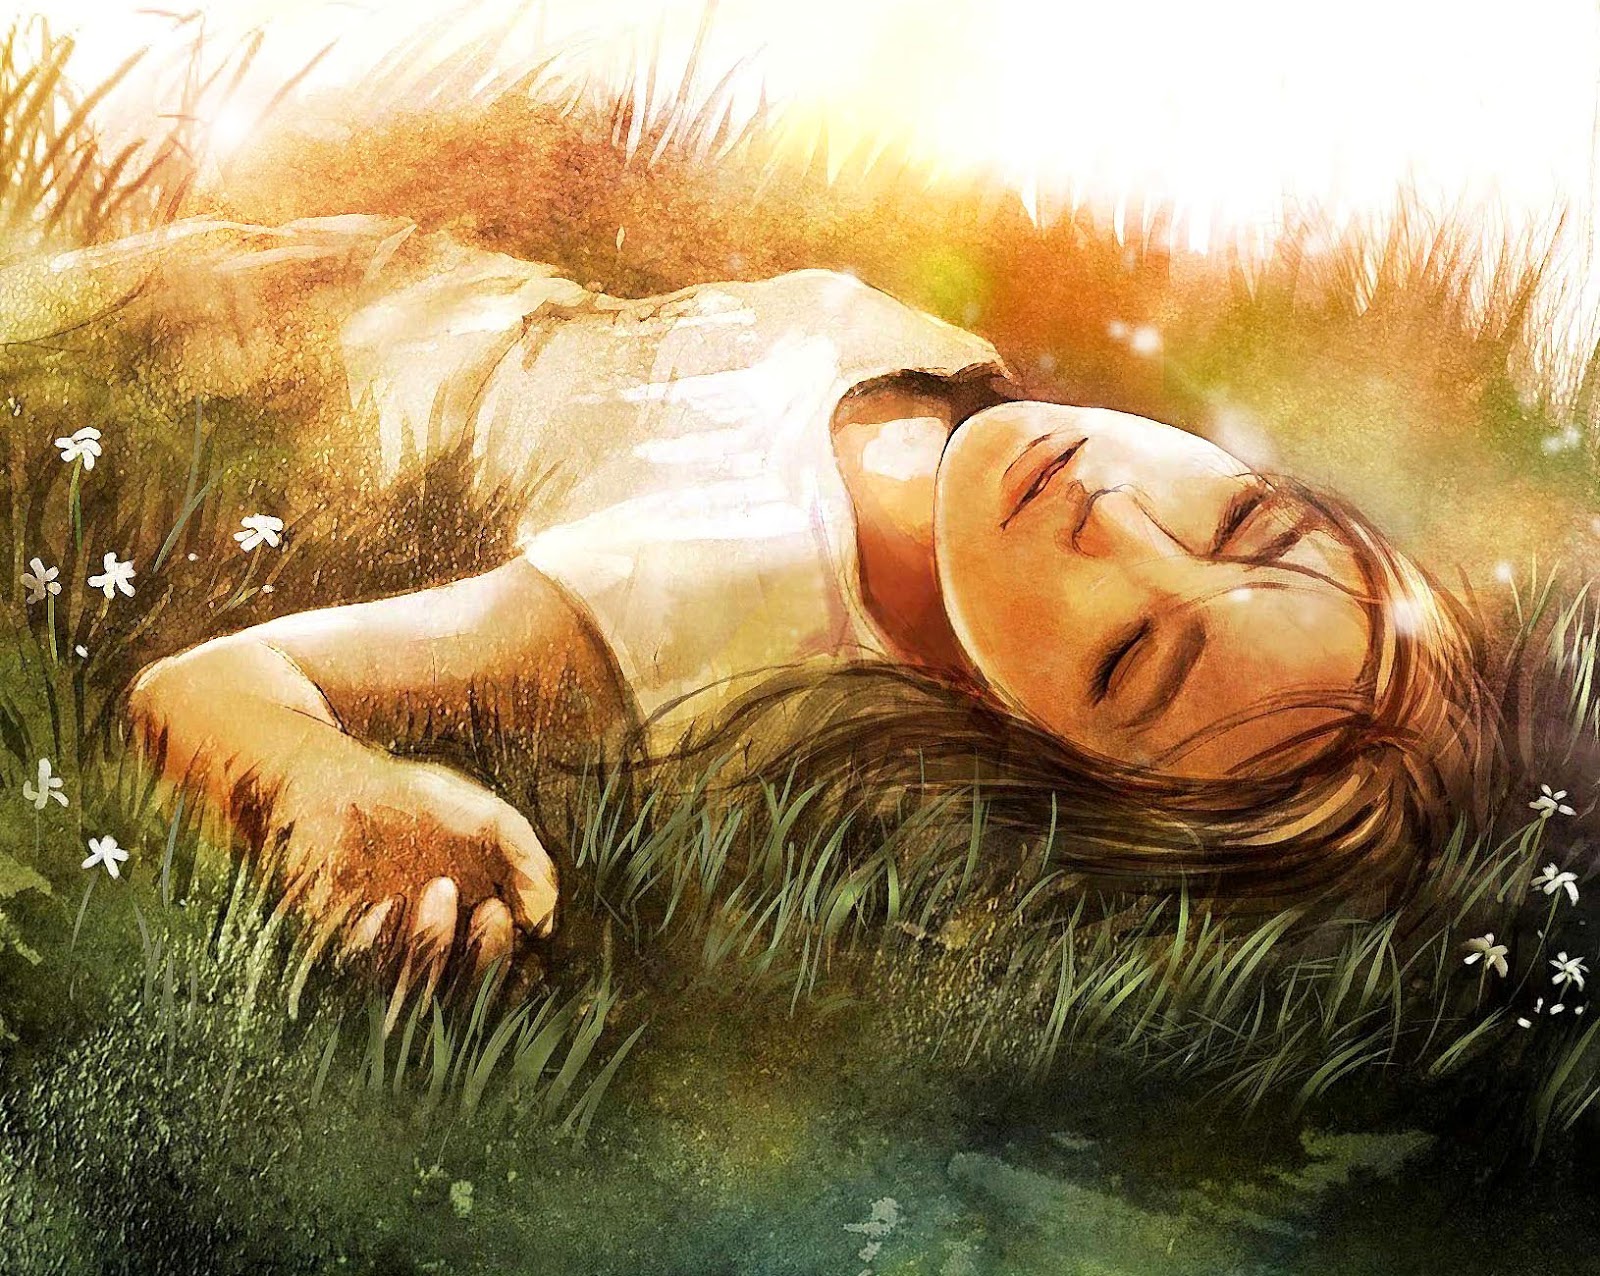 Сон жито. Человек лежит в траве арт. Мечтатель живопись. Девушка лежит на траве арт.